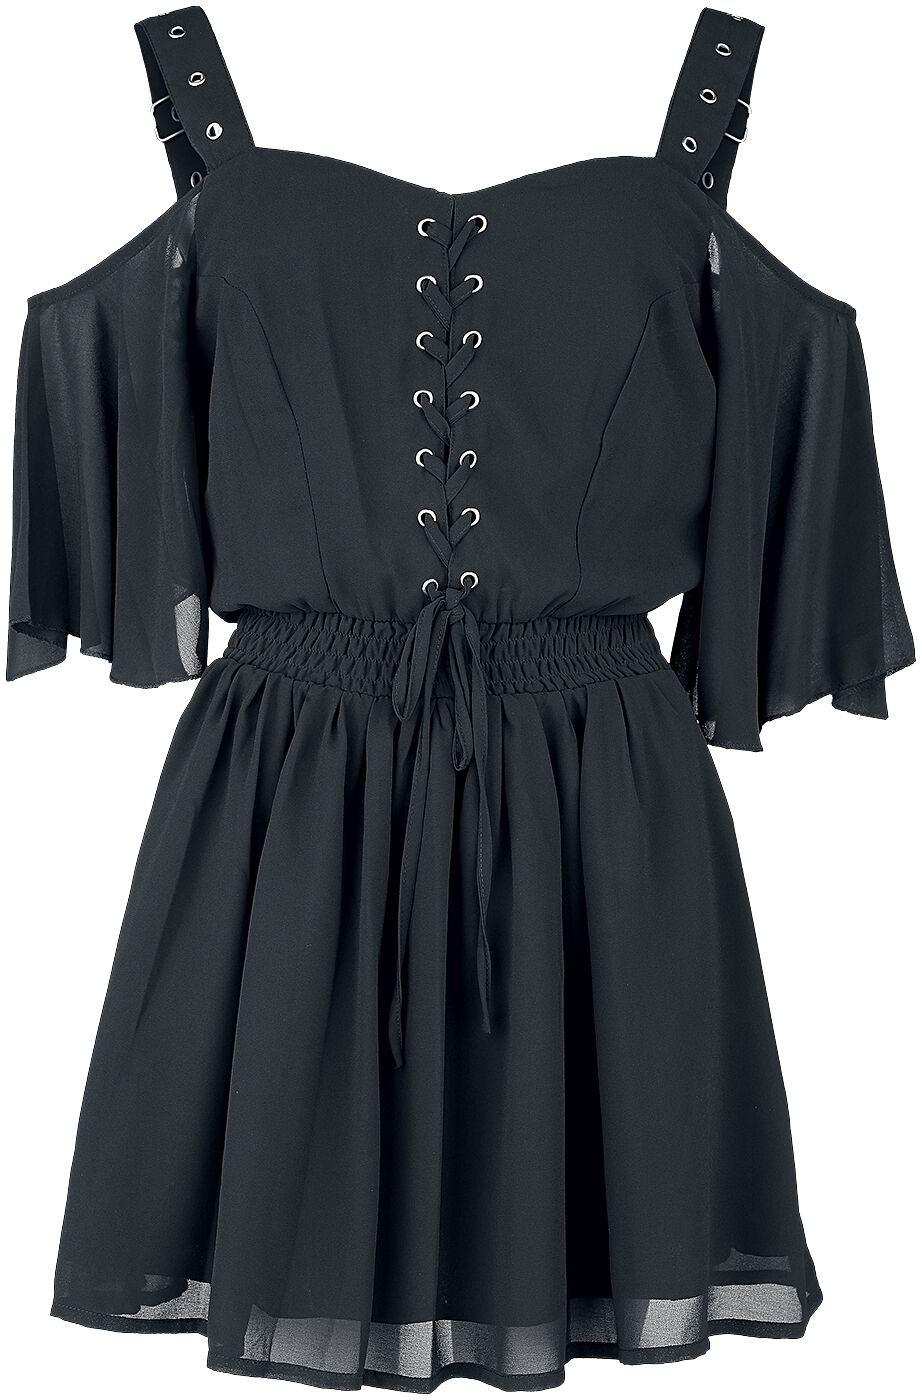 Poizen Industries - Gothic Kurzes Kleid - Catastrophe Dress - XS bis 4XL - für Damen - Größe 3XL - schwarz